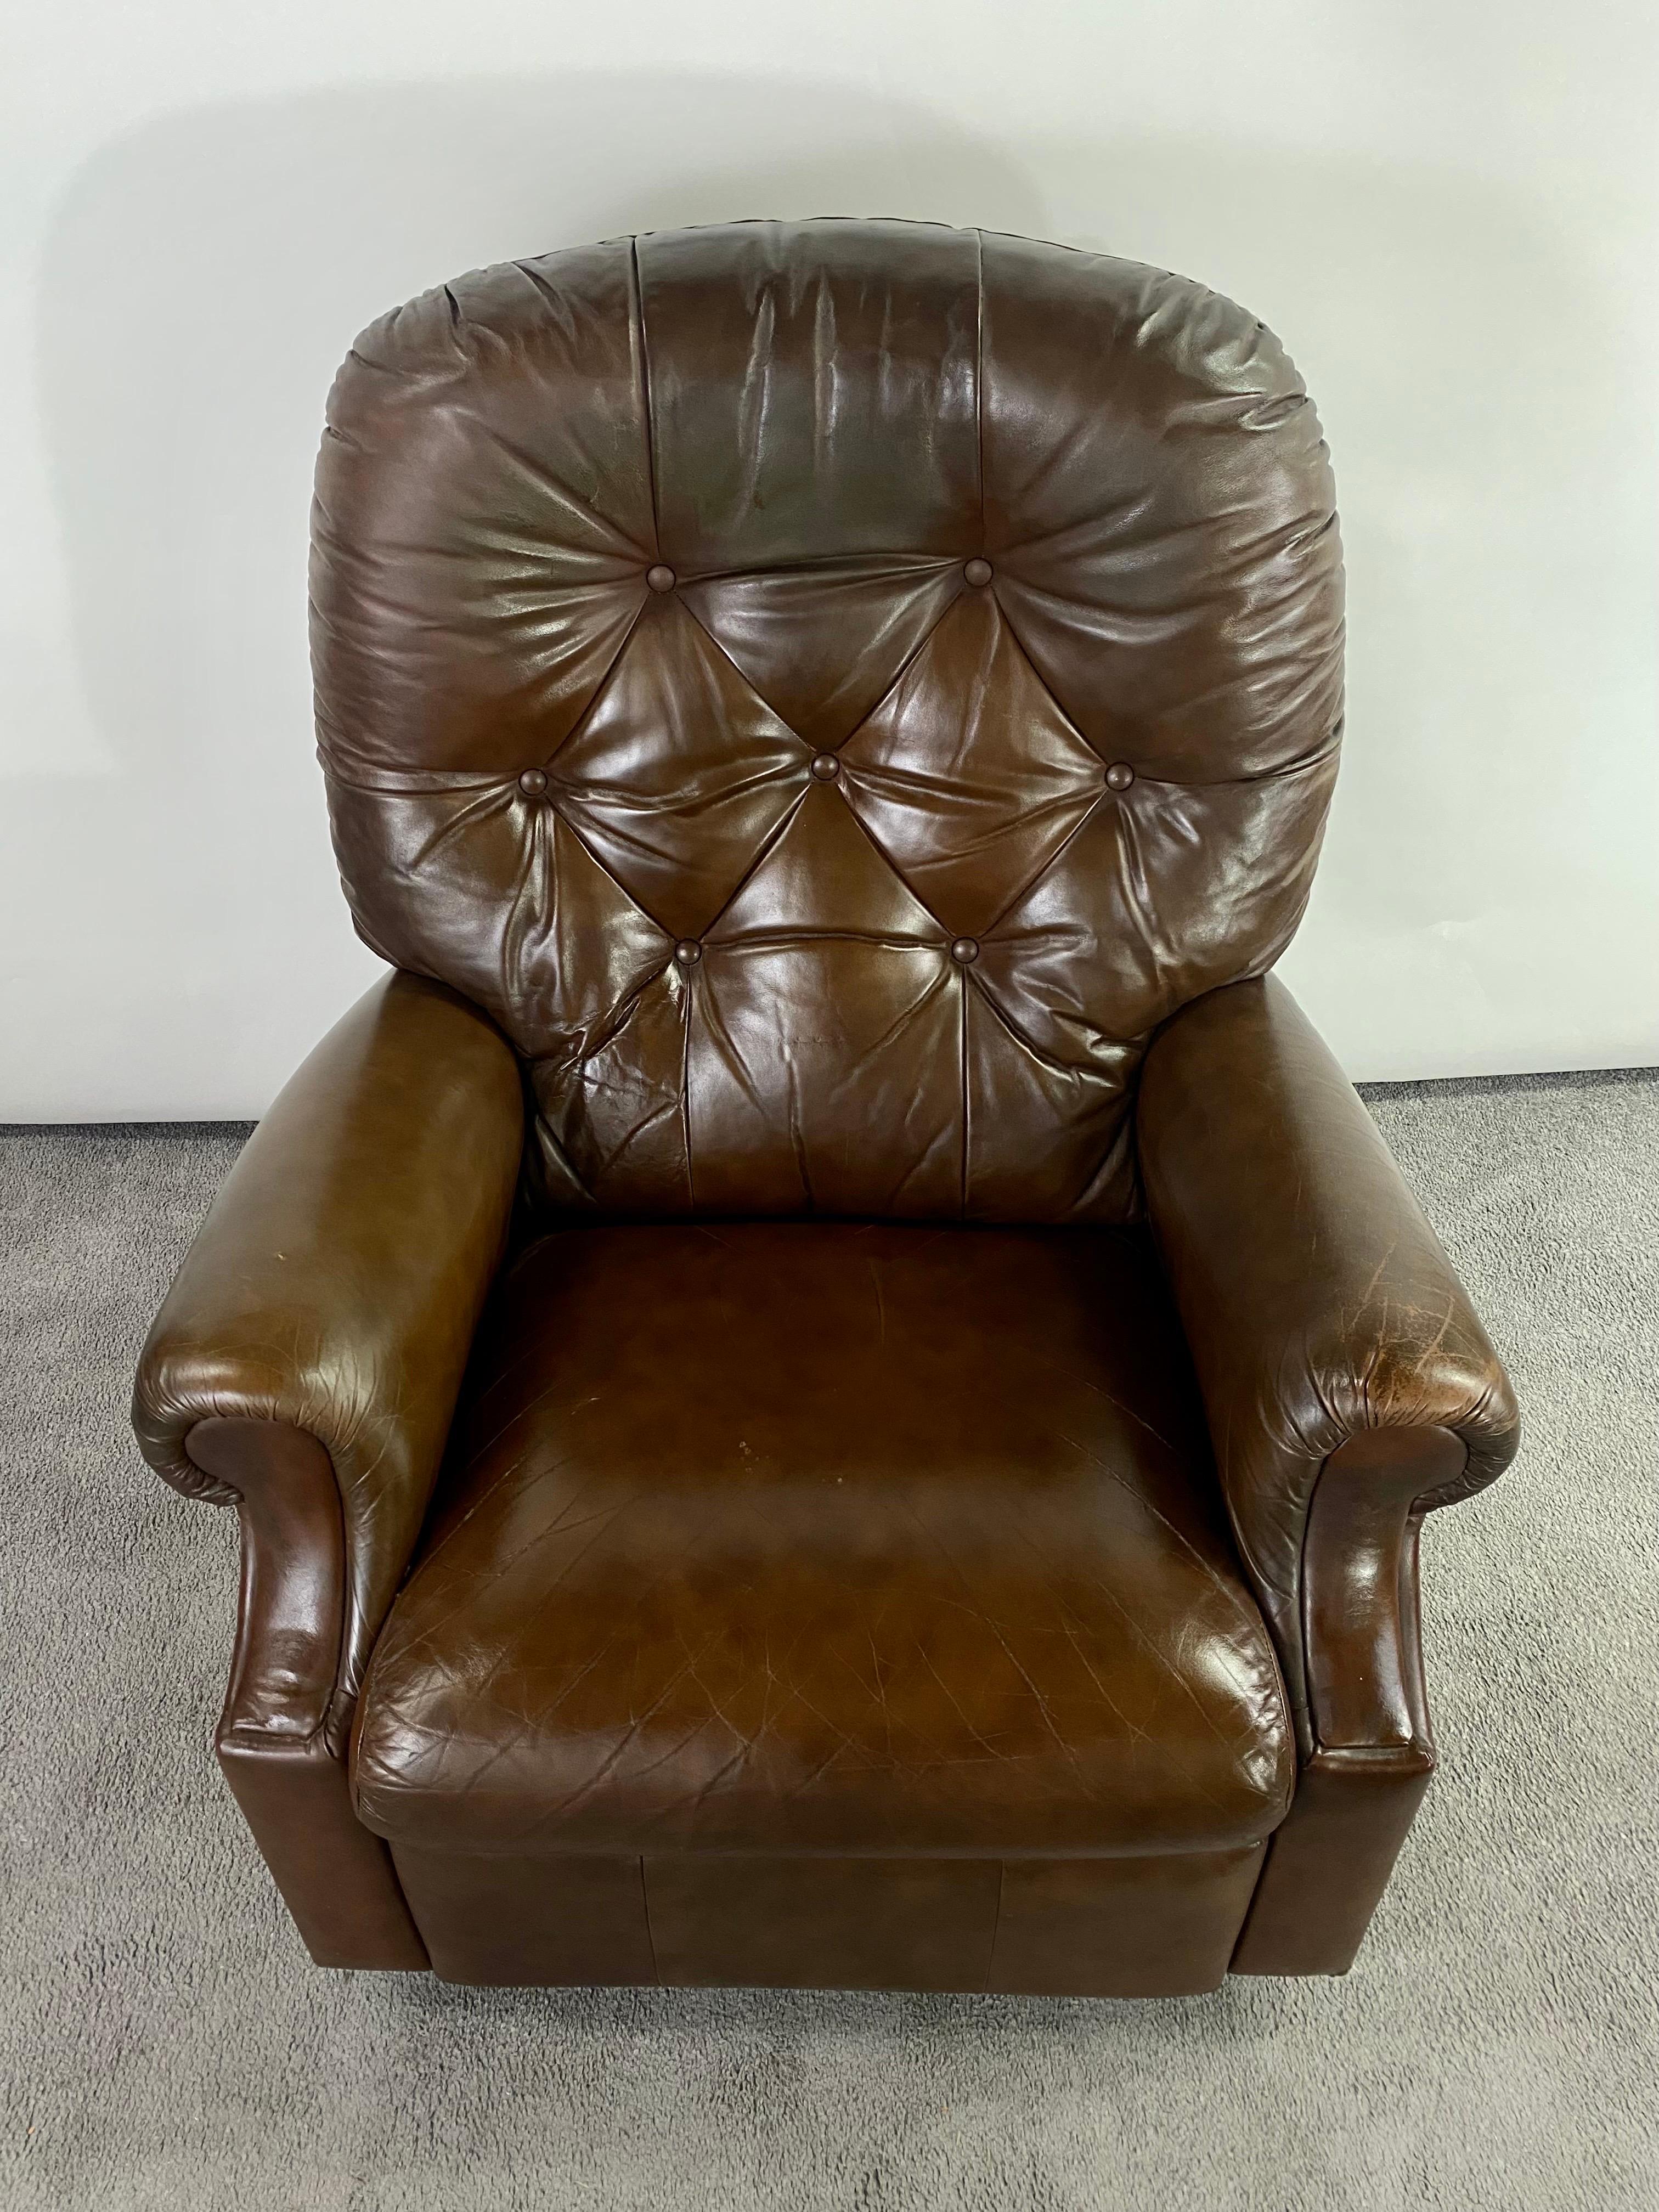 Ein Chesterfield-Stil braun echtes Leder Lazy Boy reclining Club Chair. Der klassisch-elegante Clubsessel mit getuftetem Design ist aus hochwertigem braunem Leder gefertigt.  Der Clubsessel lässt sich für zusätzlichen Komfort in einen Liegesessel